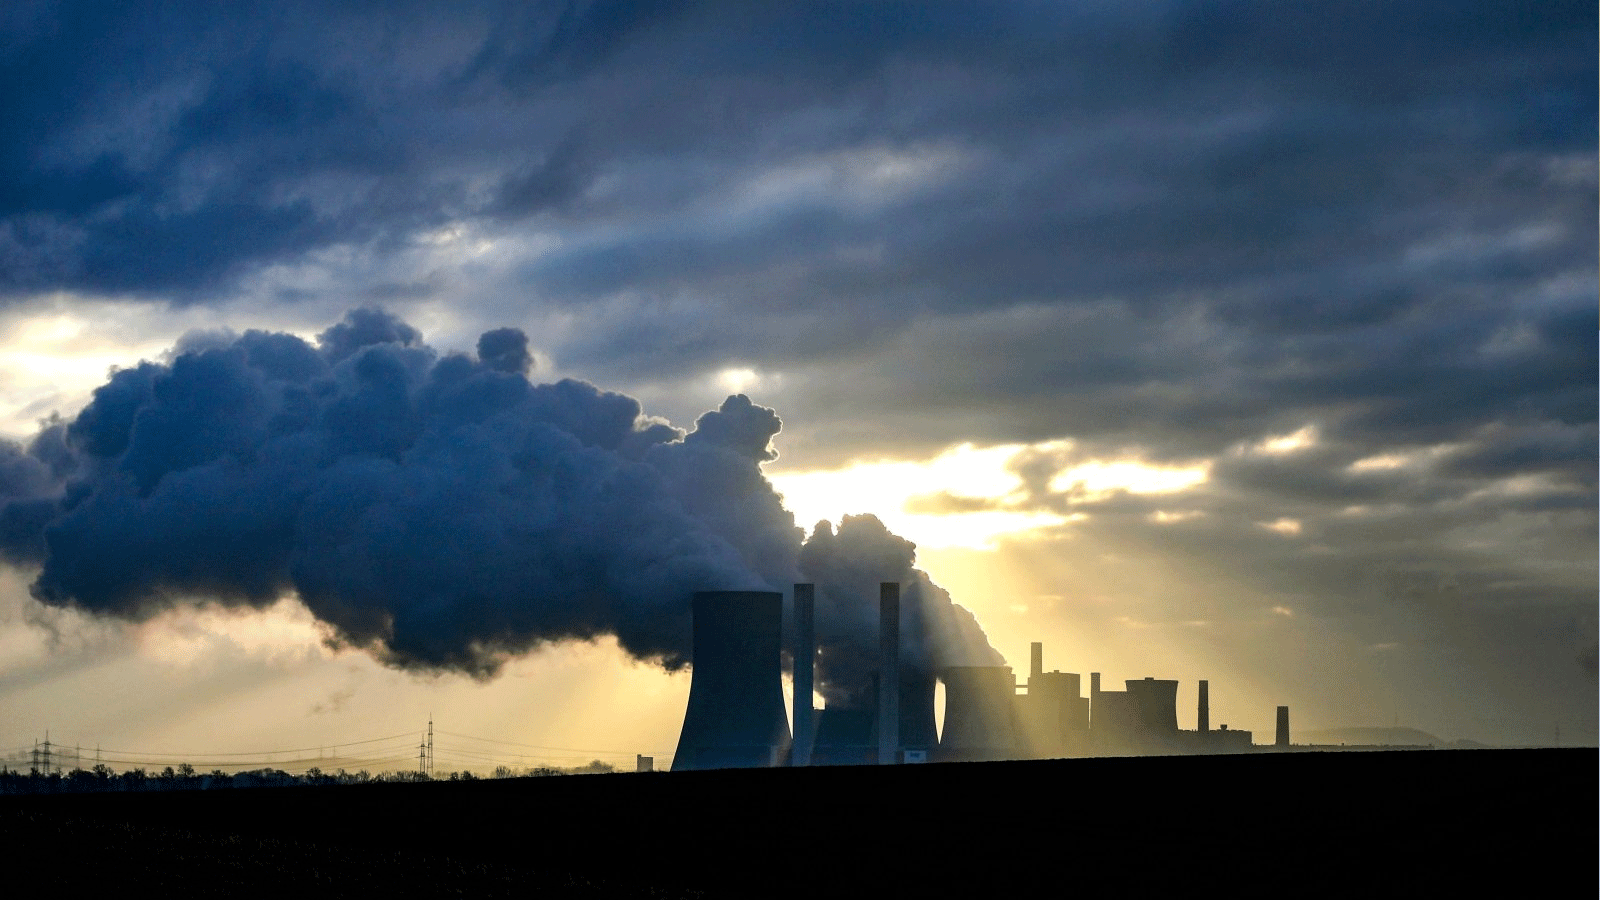 الدخان يتصاعد من أبراج التبريد في محطة الطاقة التي تعمل بالليغنيت لشركة الطاقة الألمانية العملاقة RWE في نيدراوسيم، غرب ألمانيا. 17 كانون الثاني\ يناير 2022